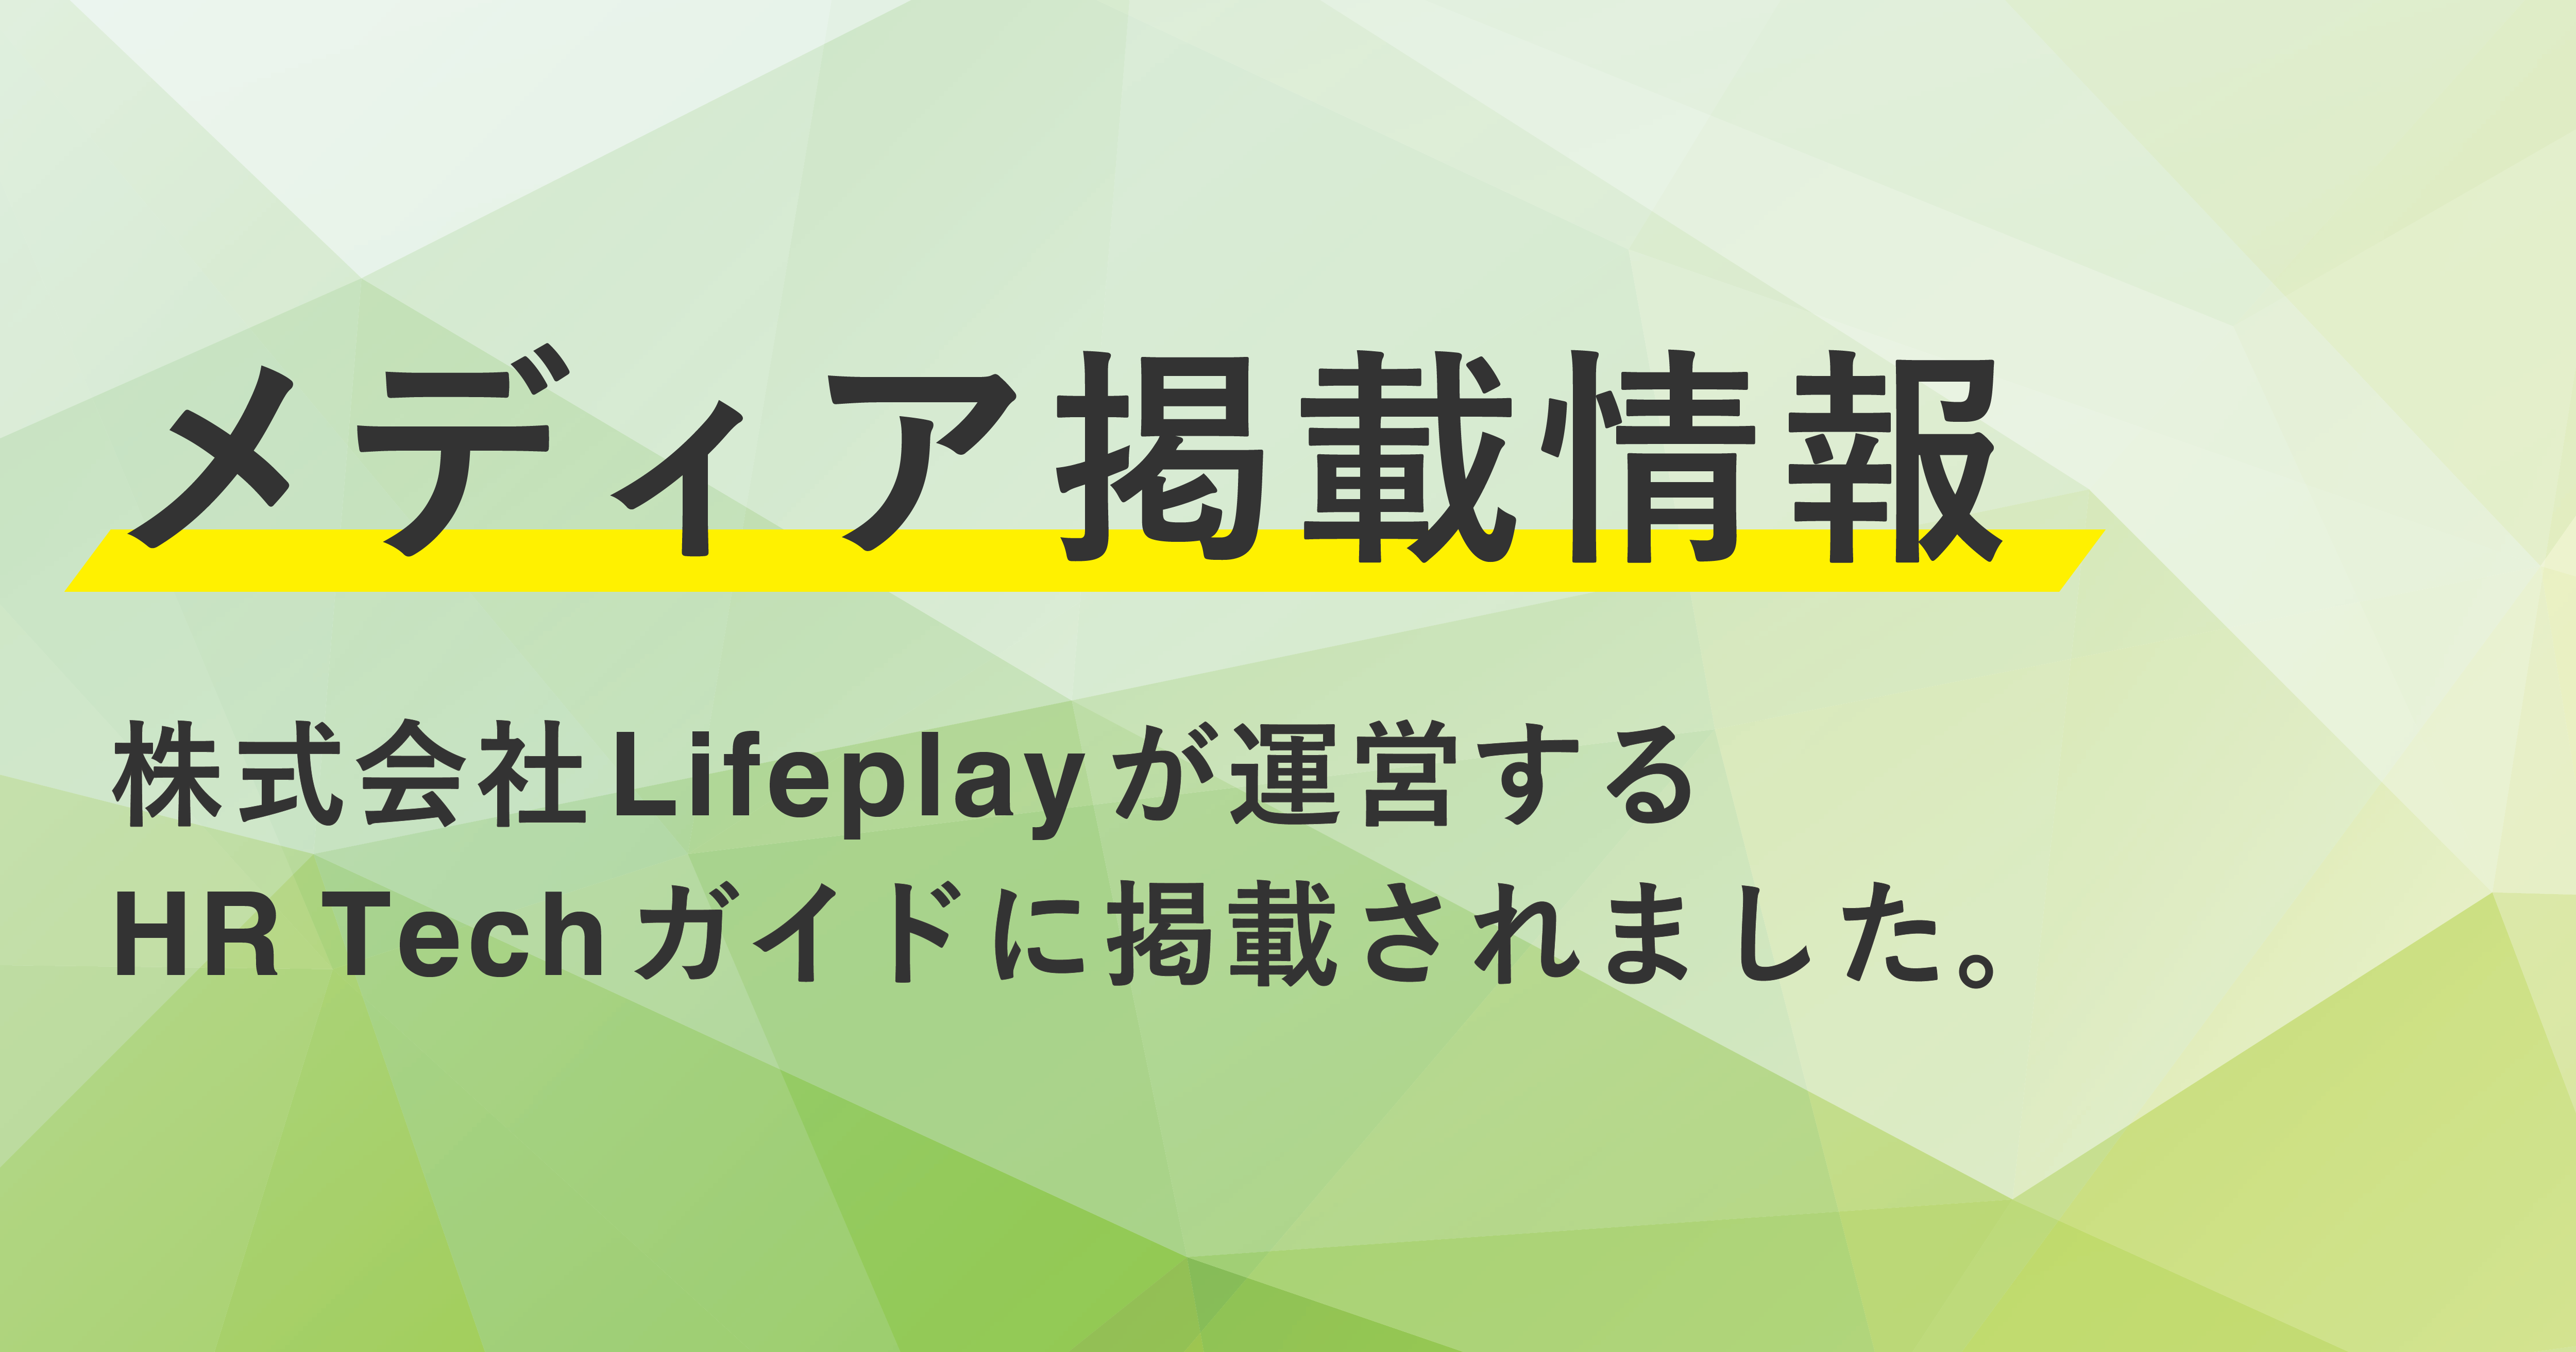 【メディア掲載情報】株式会社Lifeplayが運営するHR Techガイドに掲載されました。